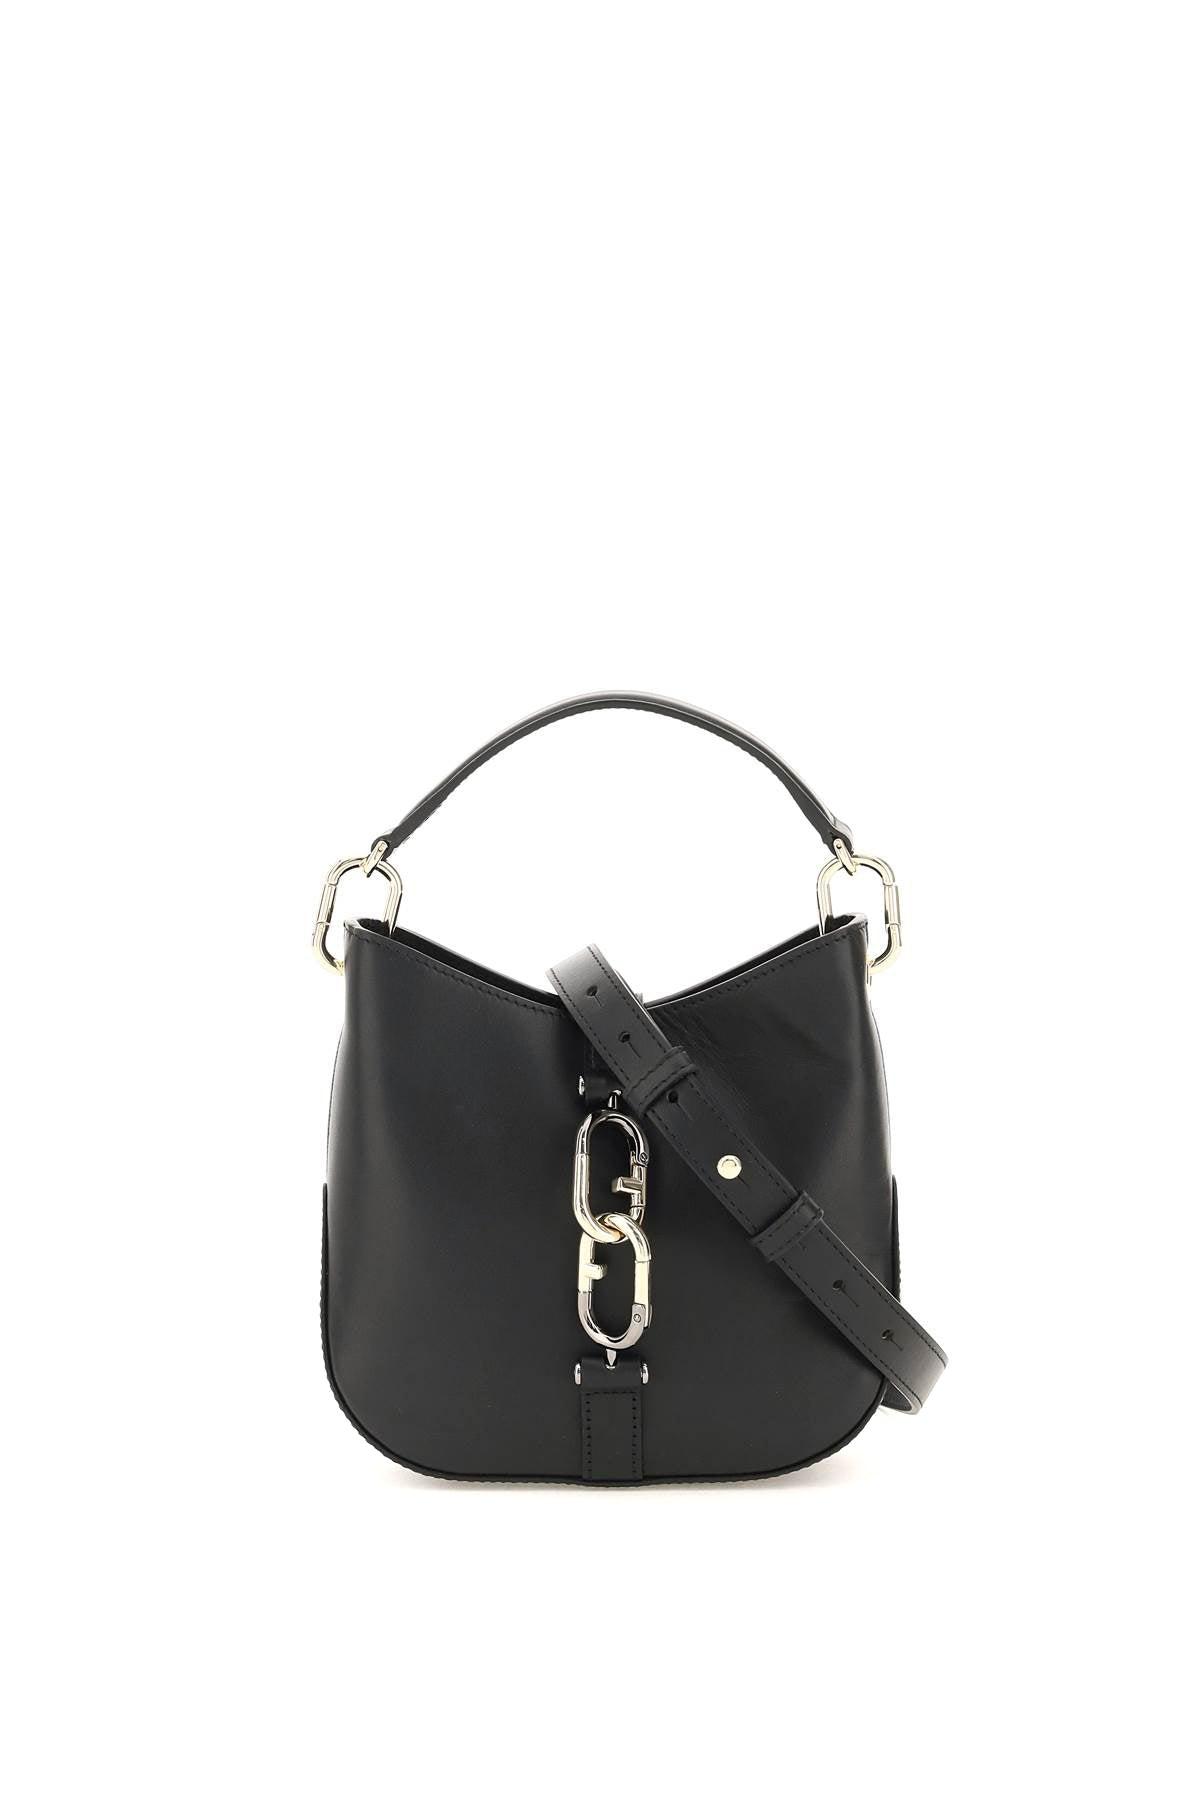 Furla Leather Sirena Mini Hobo Bag in Nero (Black) | Lyst